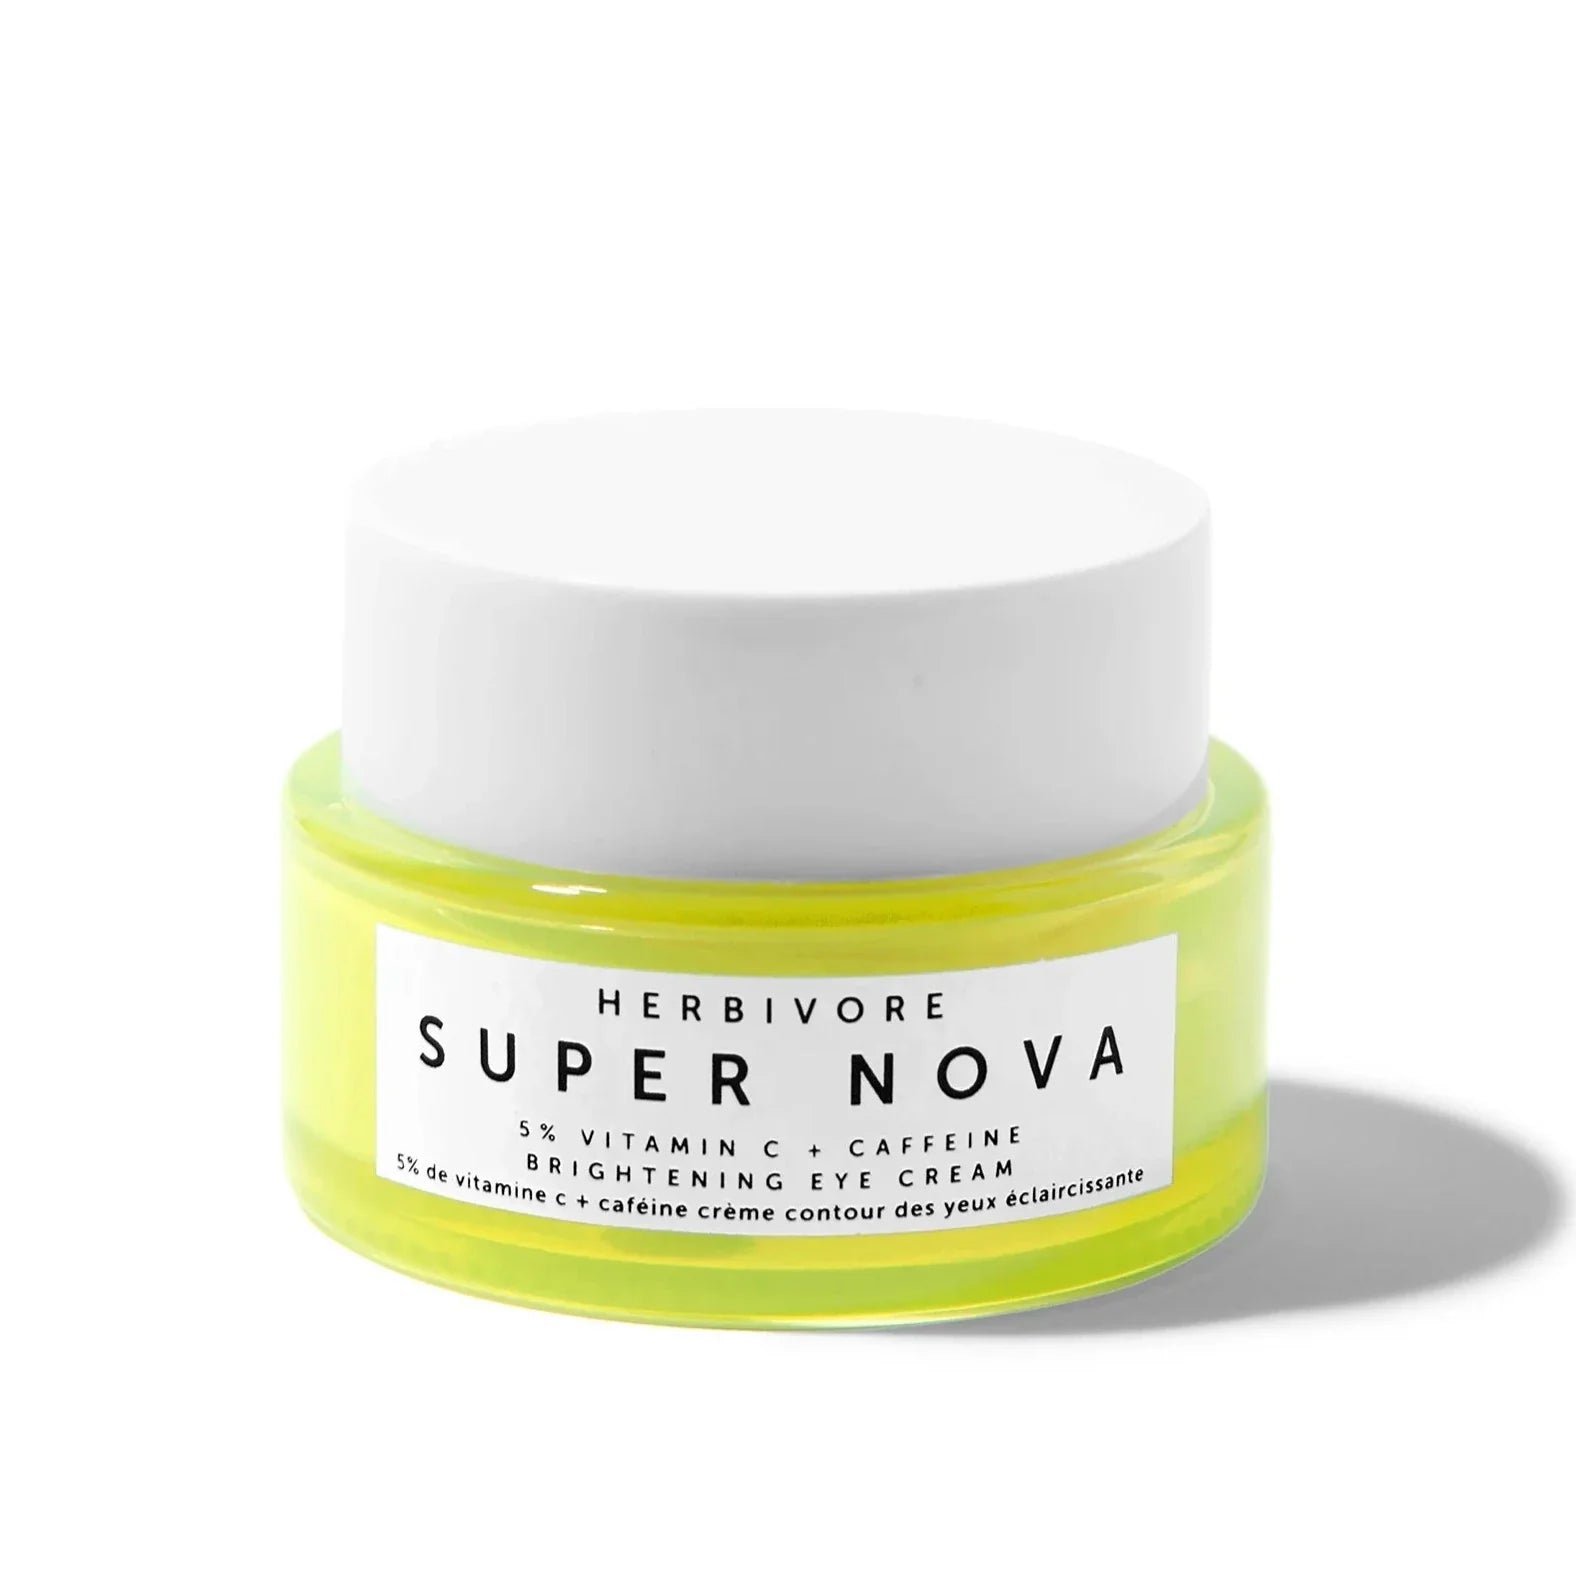 Super Nova Brightening Eye Cream on white background.